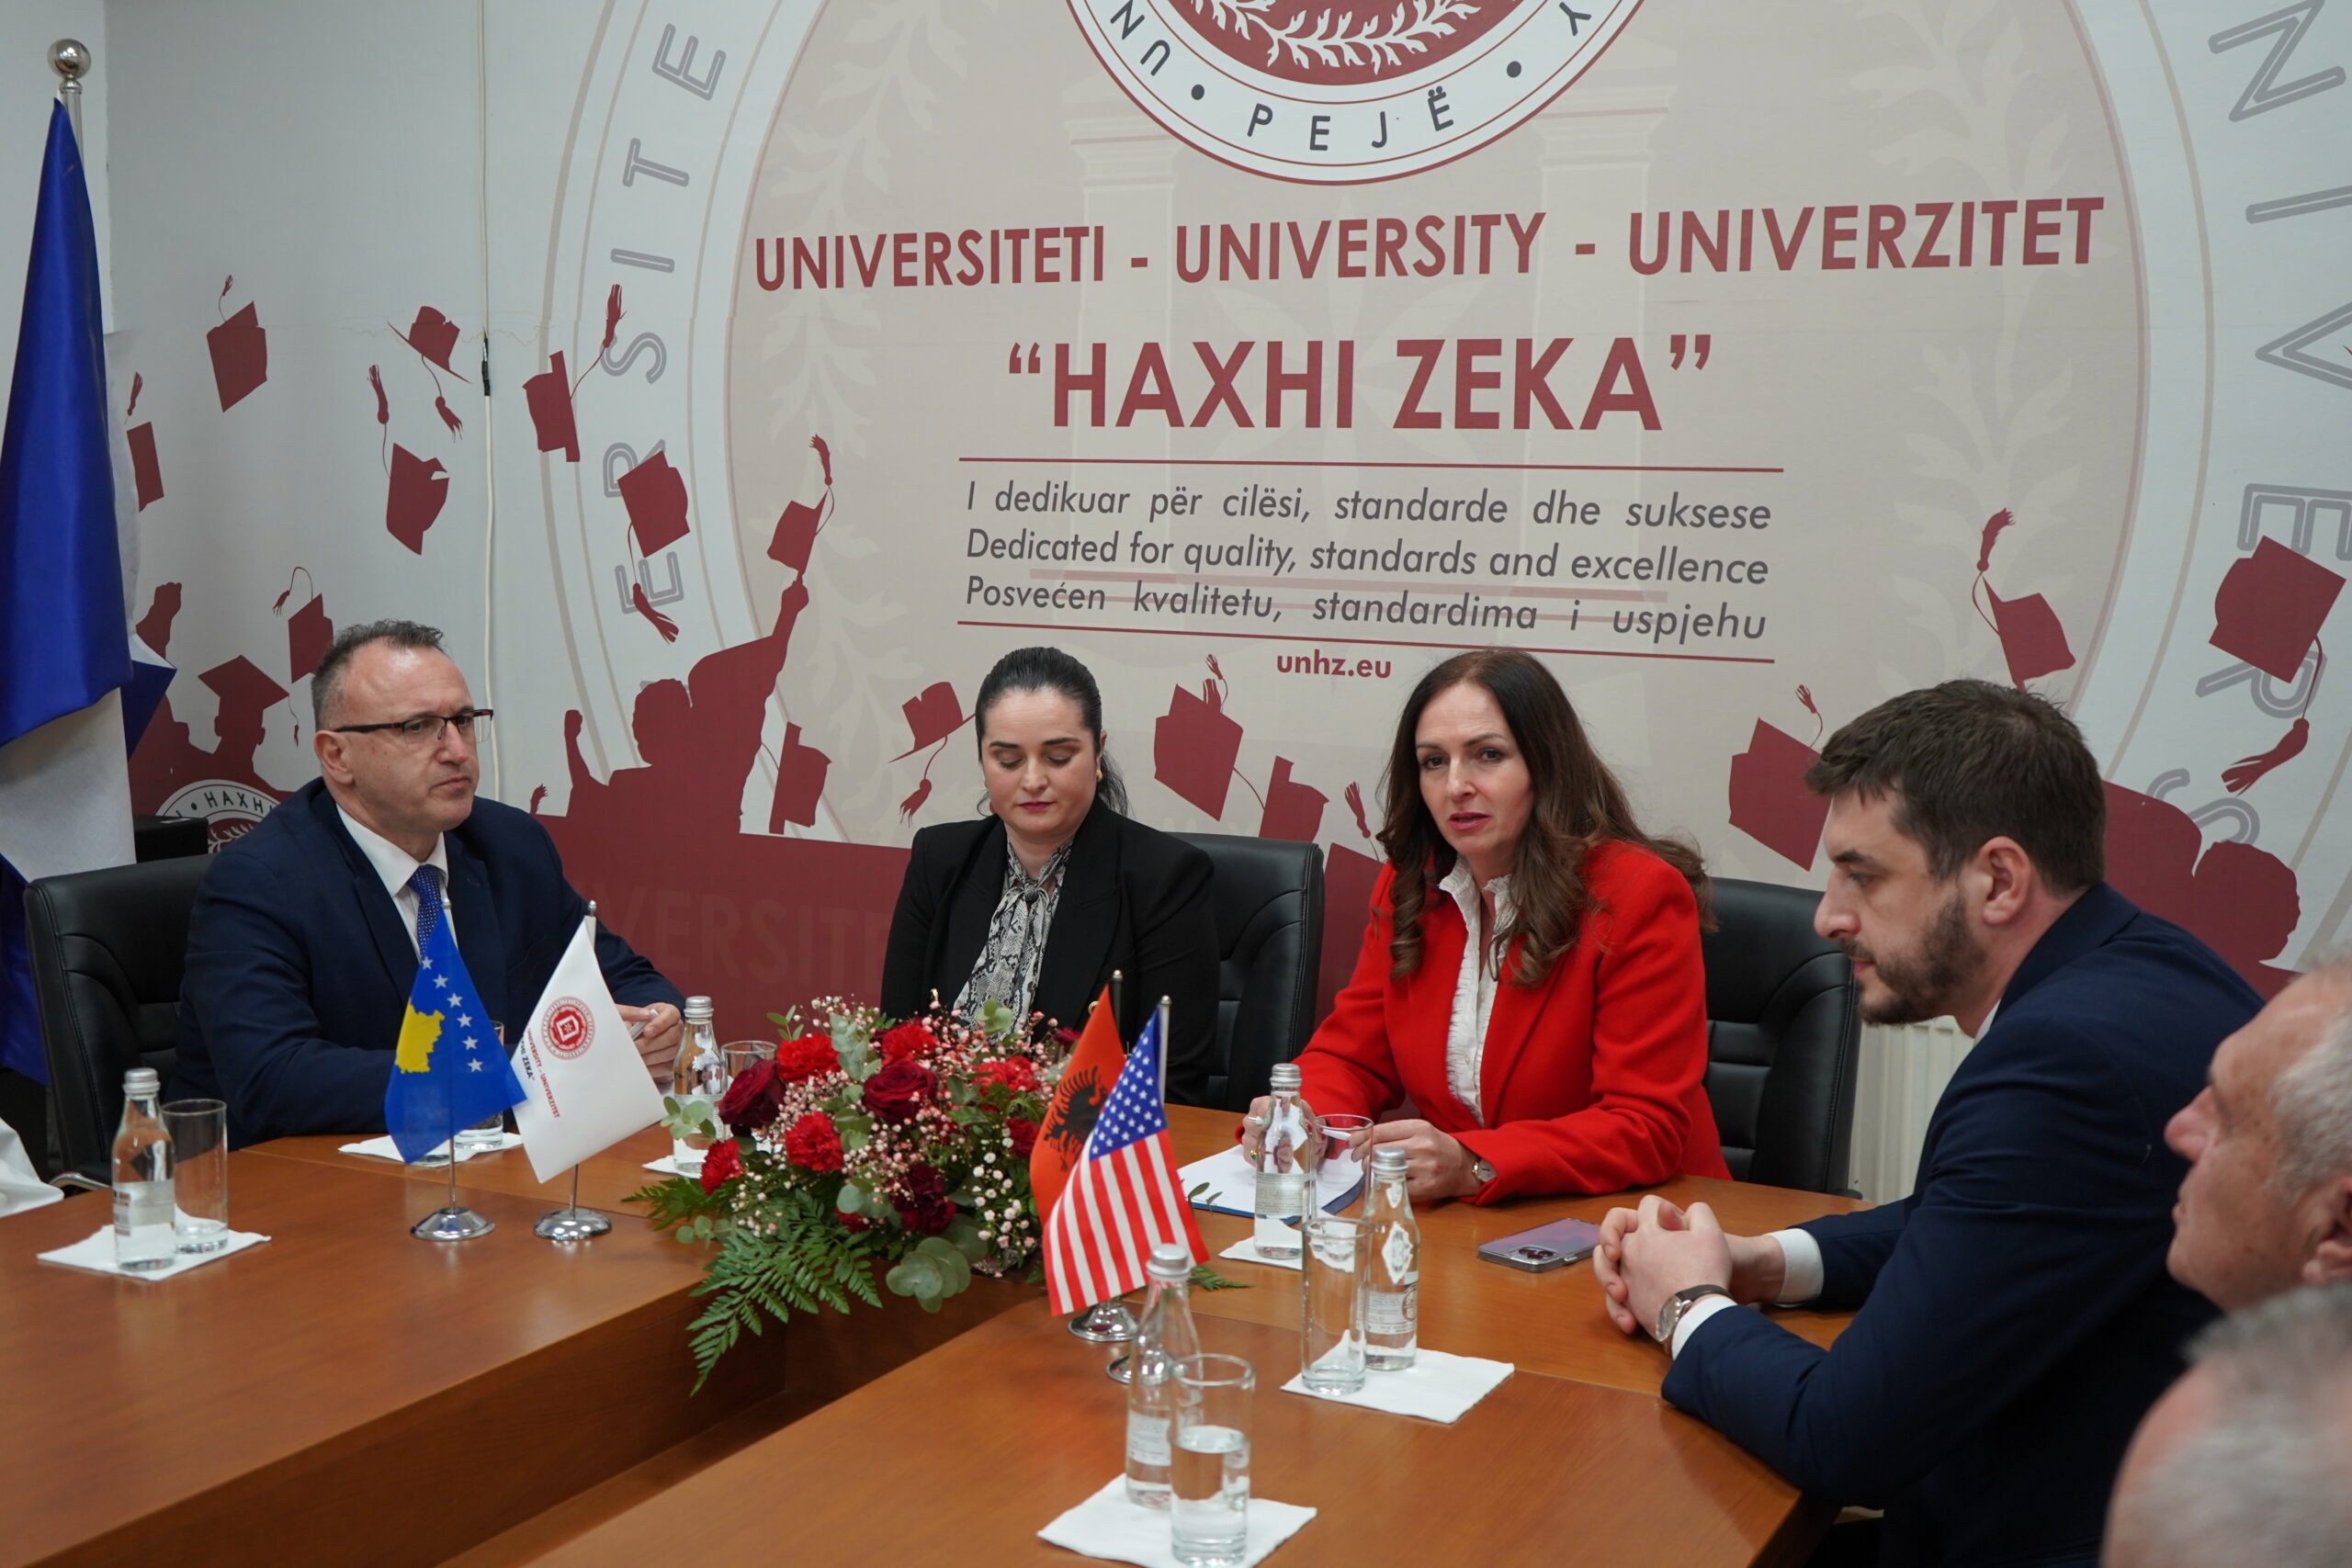 Ministrja e Arsimit, Shkencës, Teknologjisë dhe Inovacionit, Arbërie Nagavci, në vizitë në Universitetin “Haxhi Zeka”